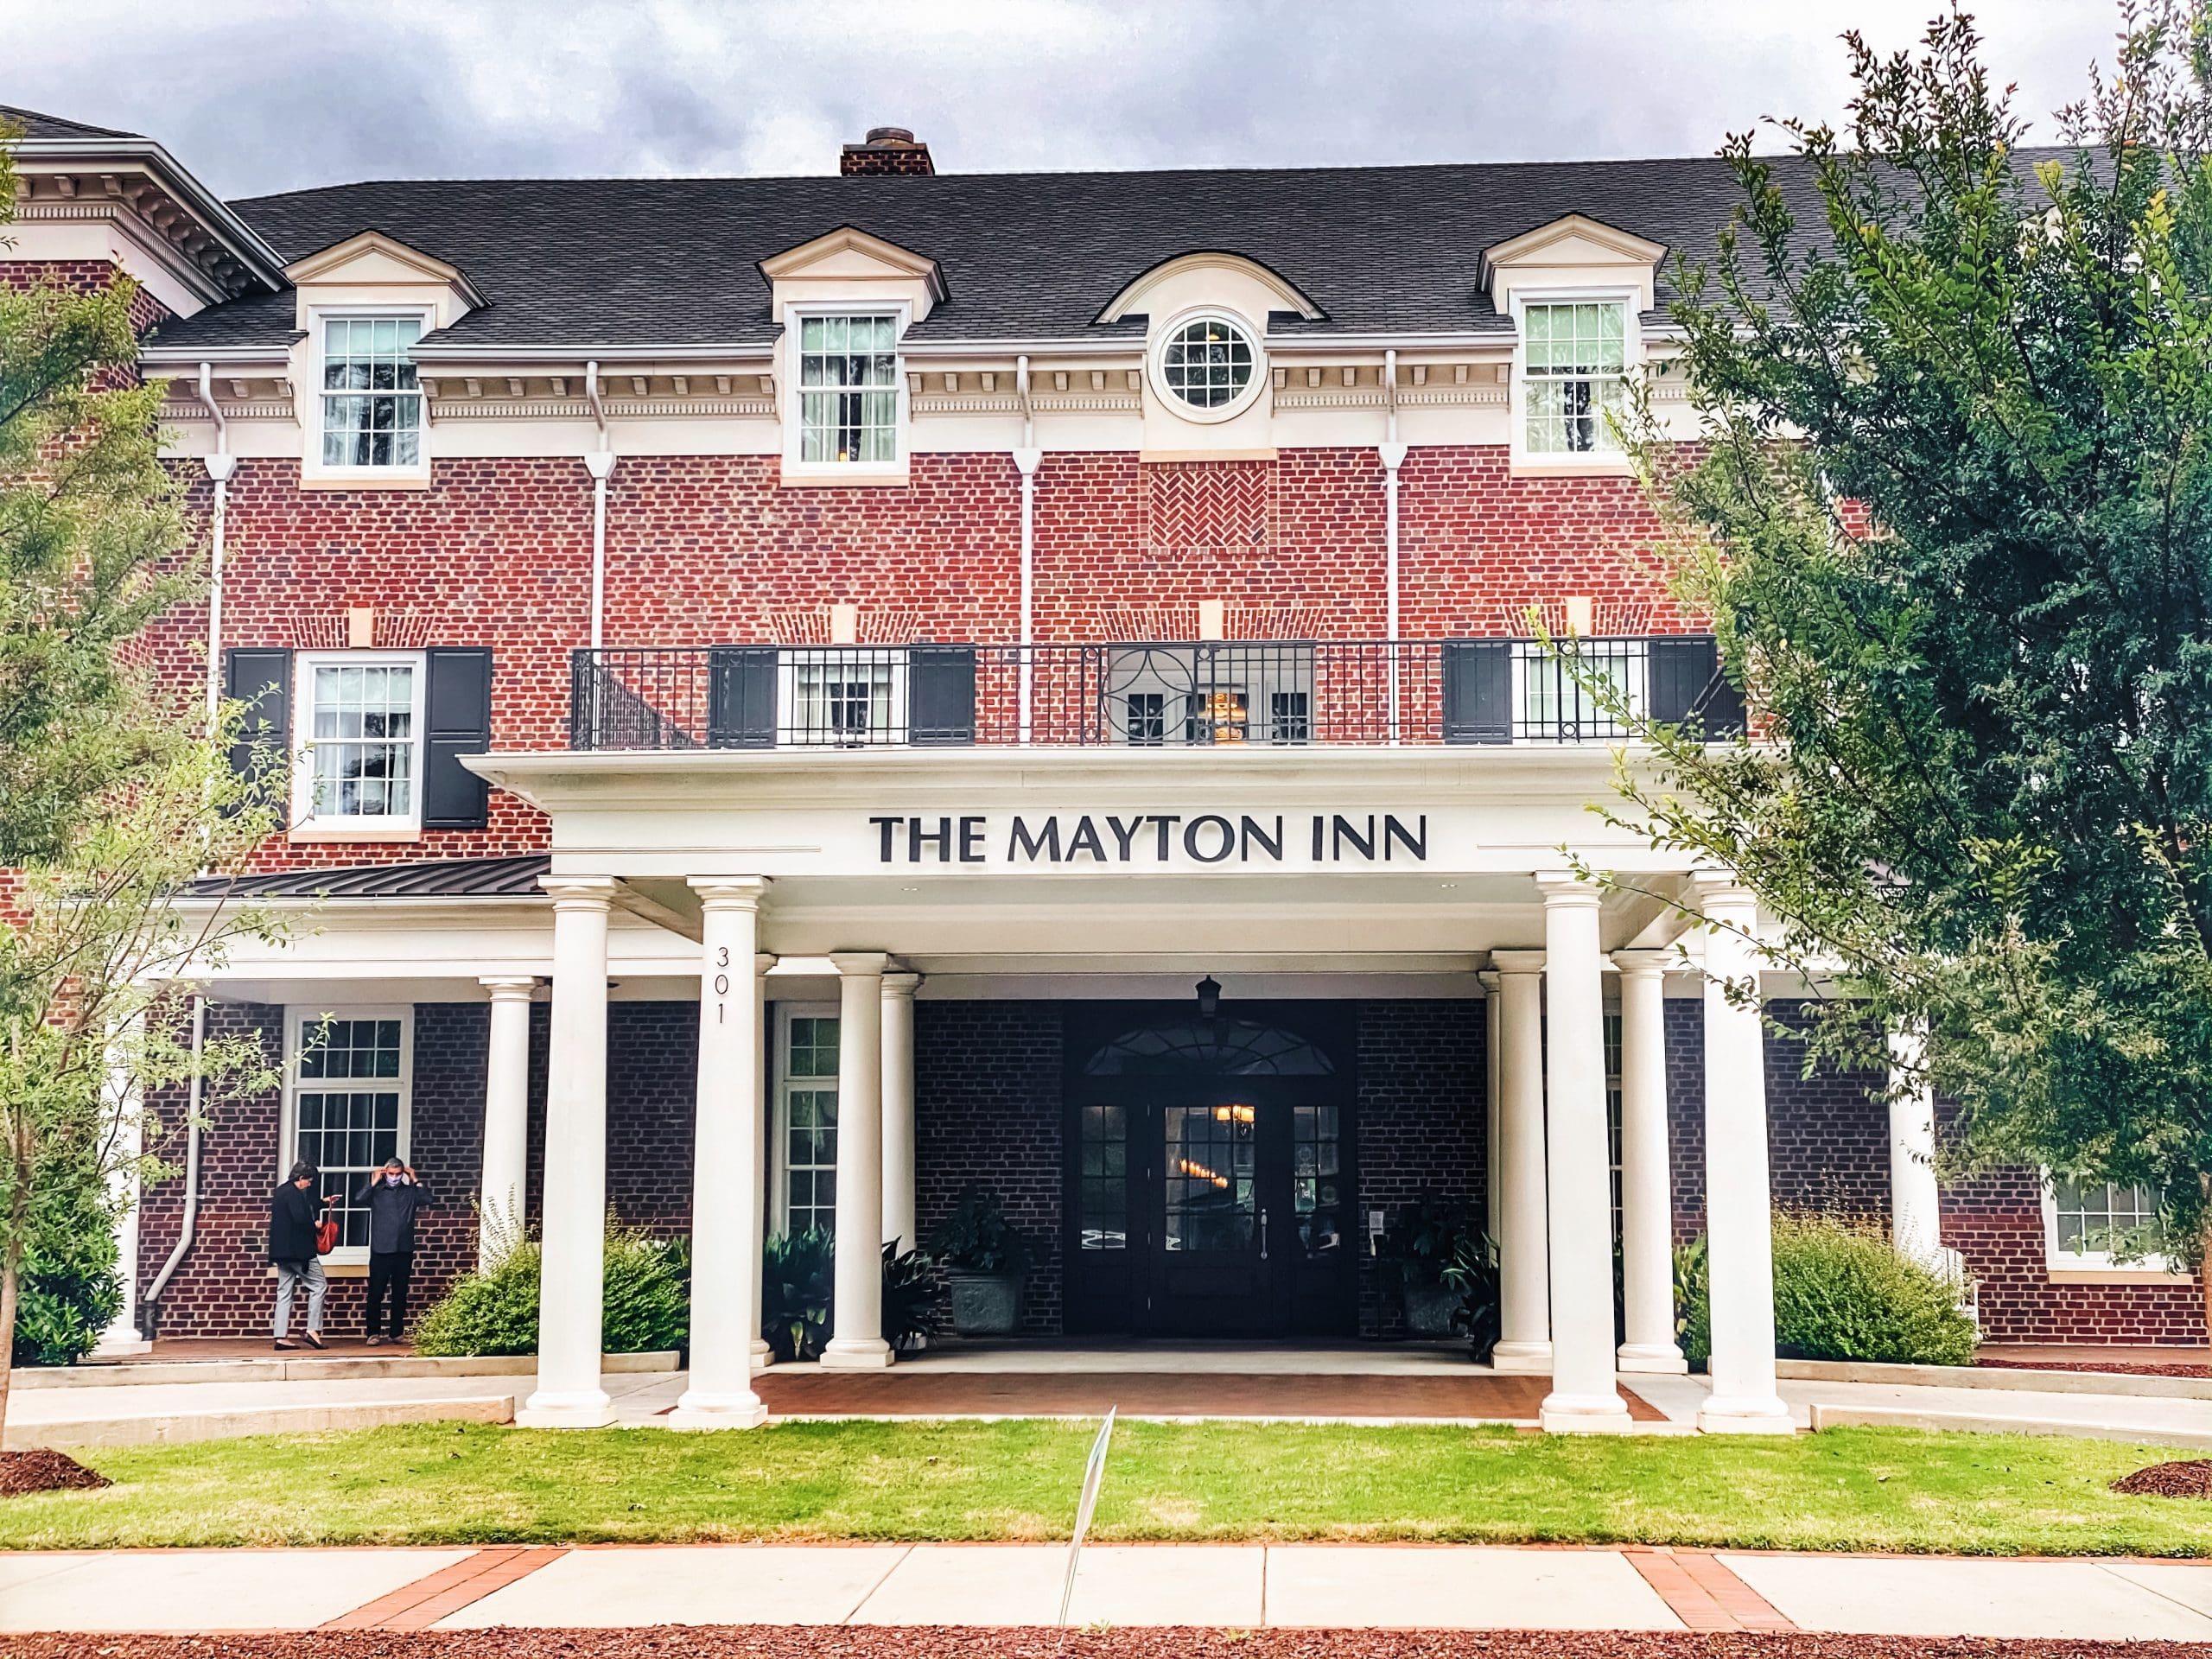 Mayton Inn